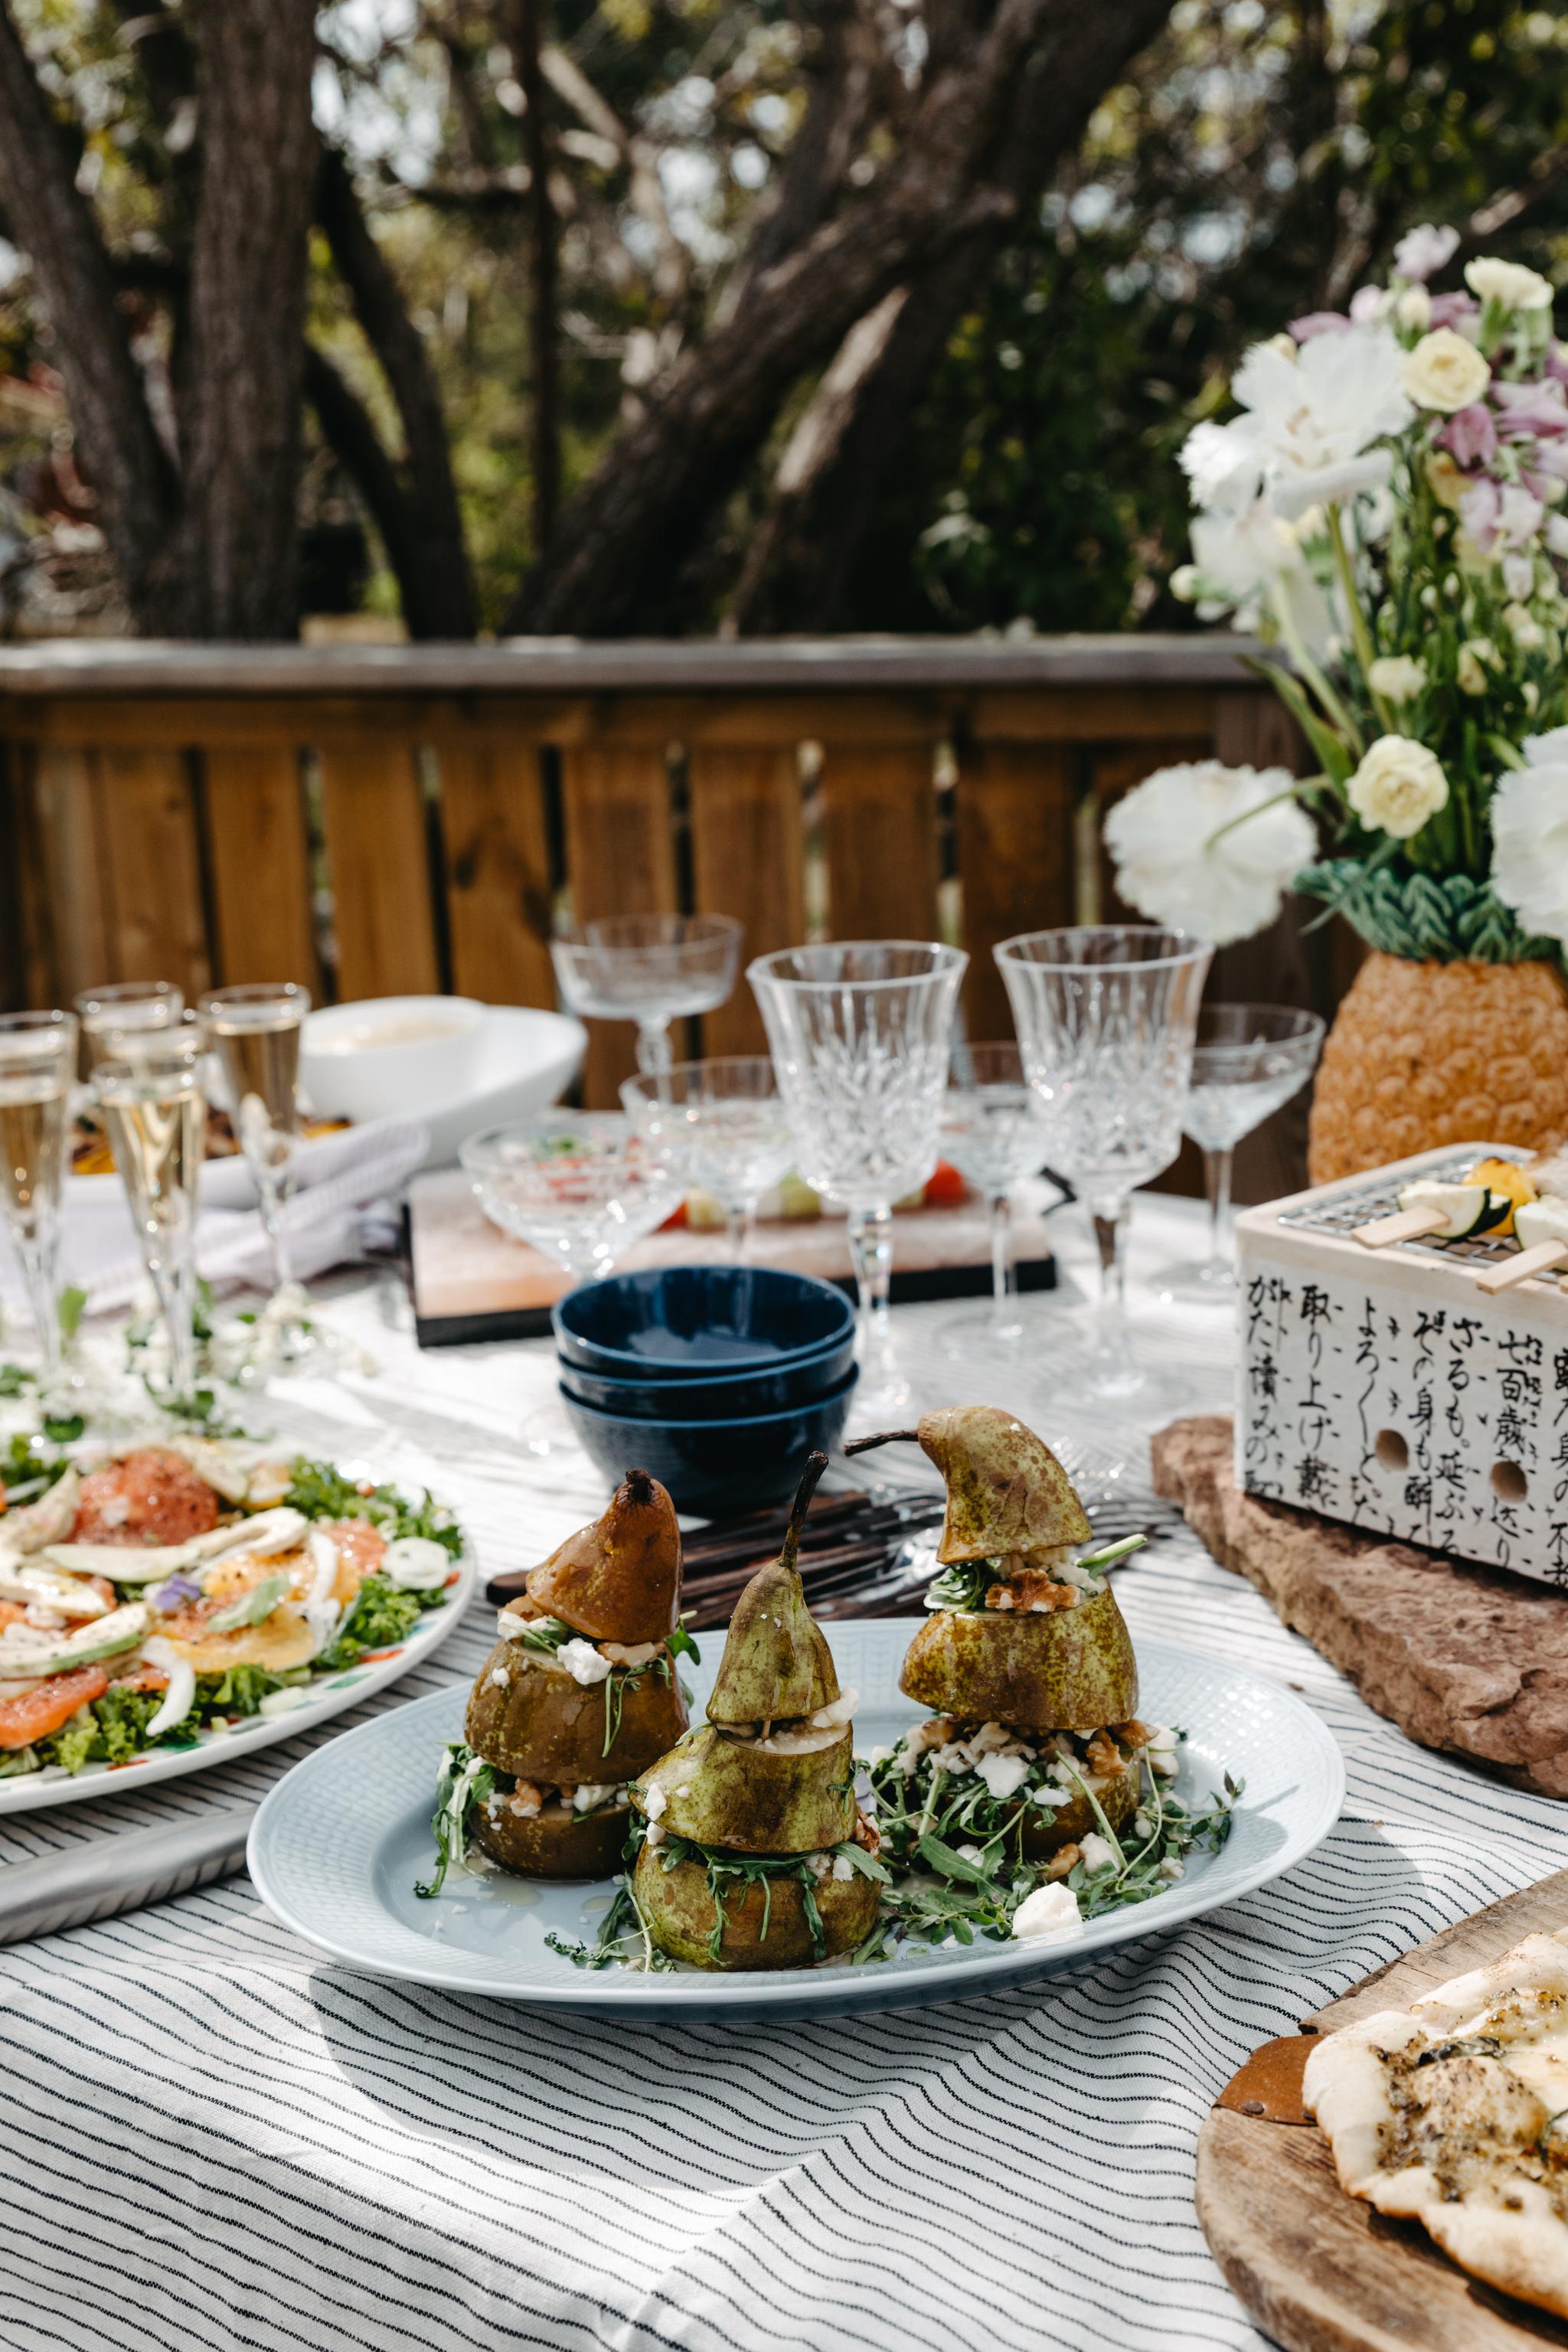 Rörstrand vaaleansininen lautanen pöydän kattaus kesäjuhlat vinilasit kulhot luonnonkukat